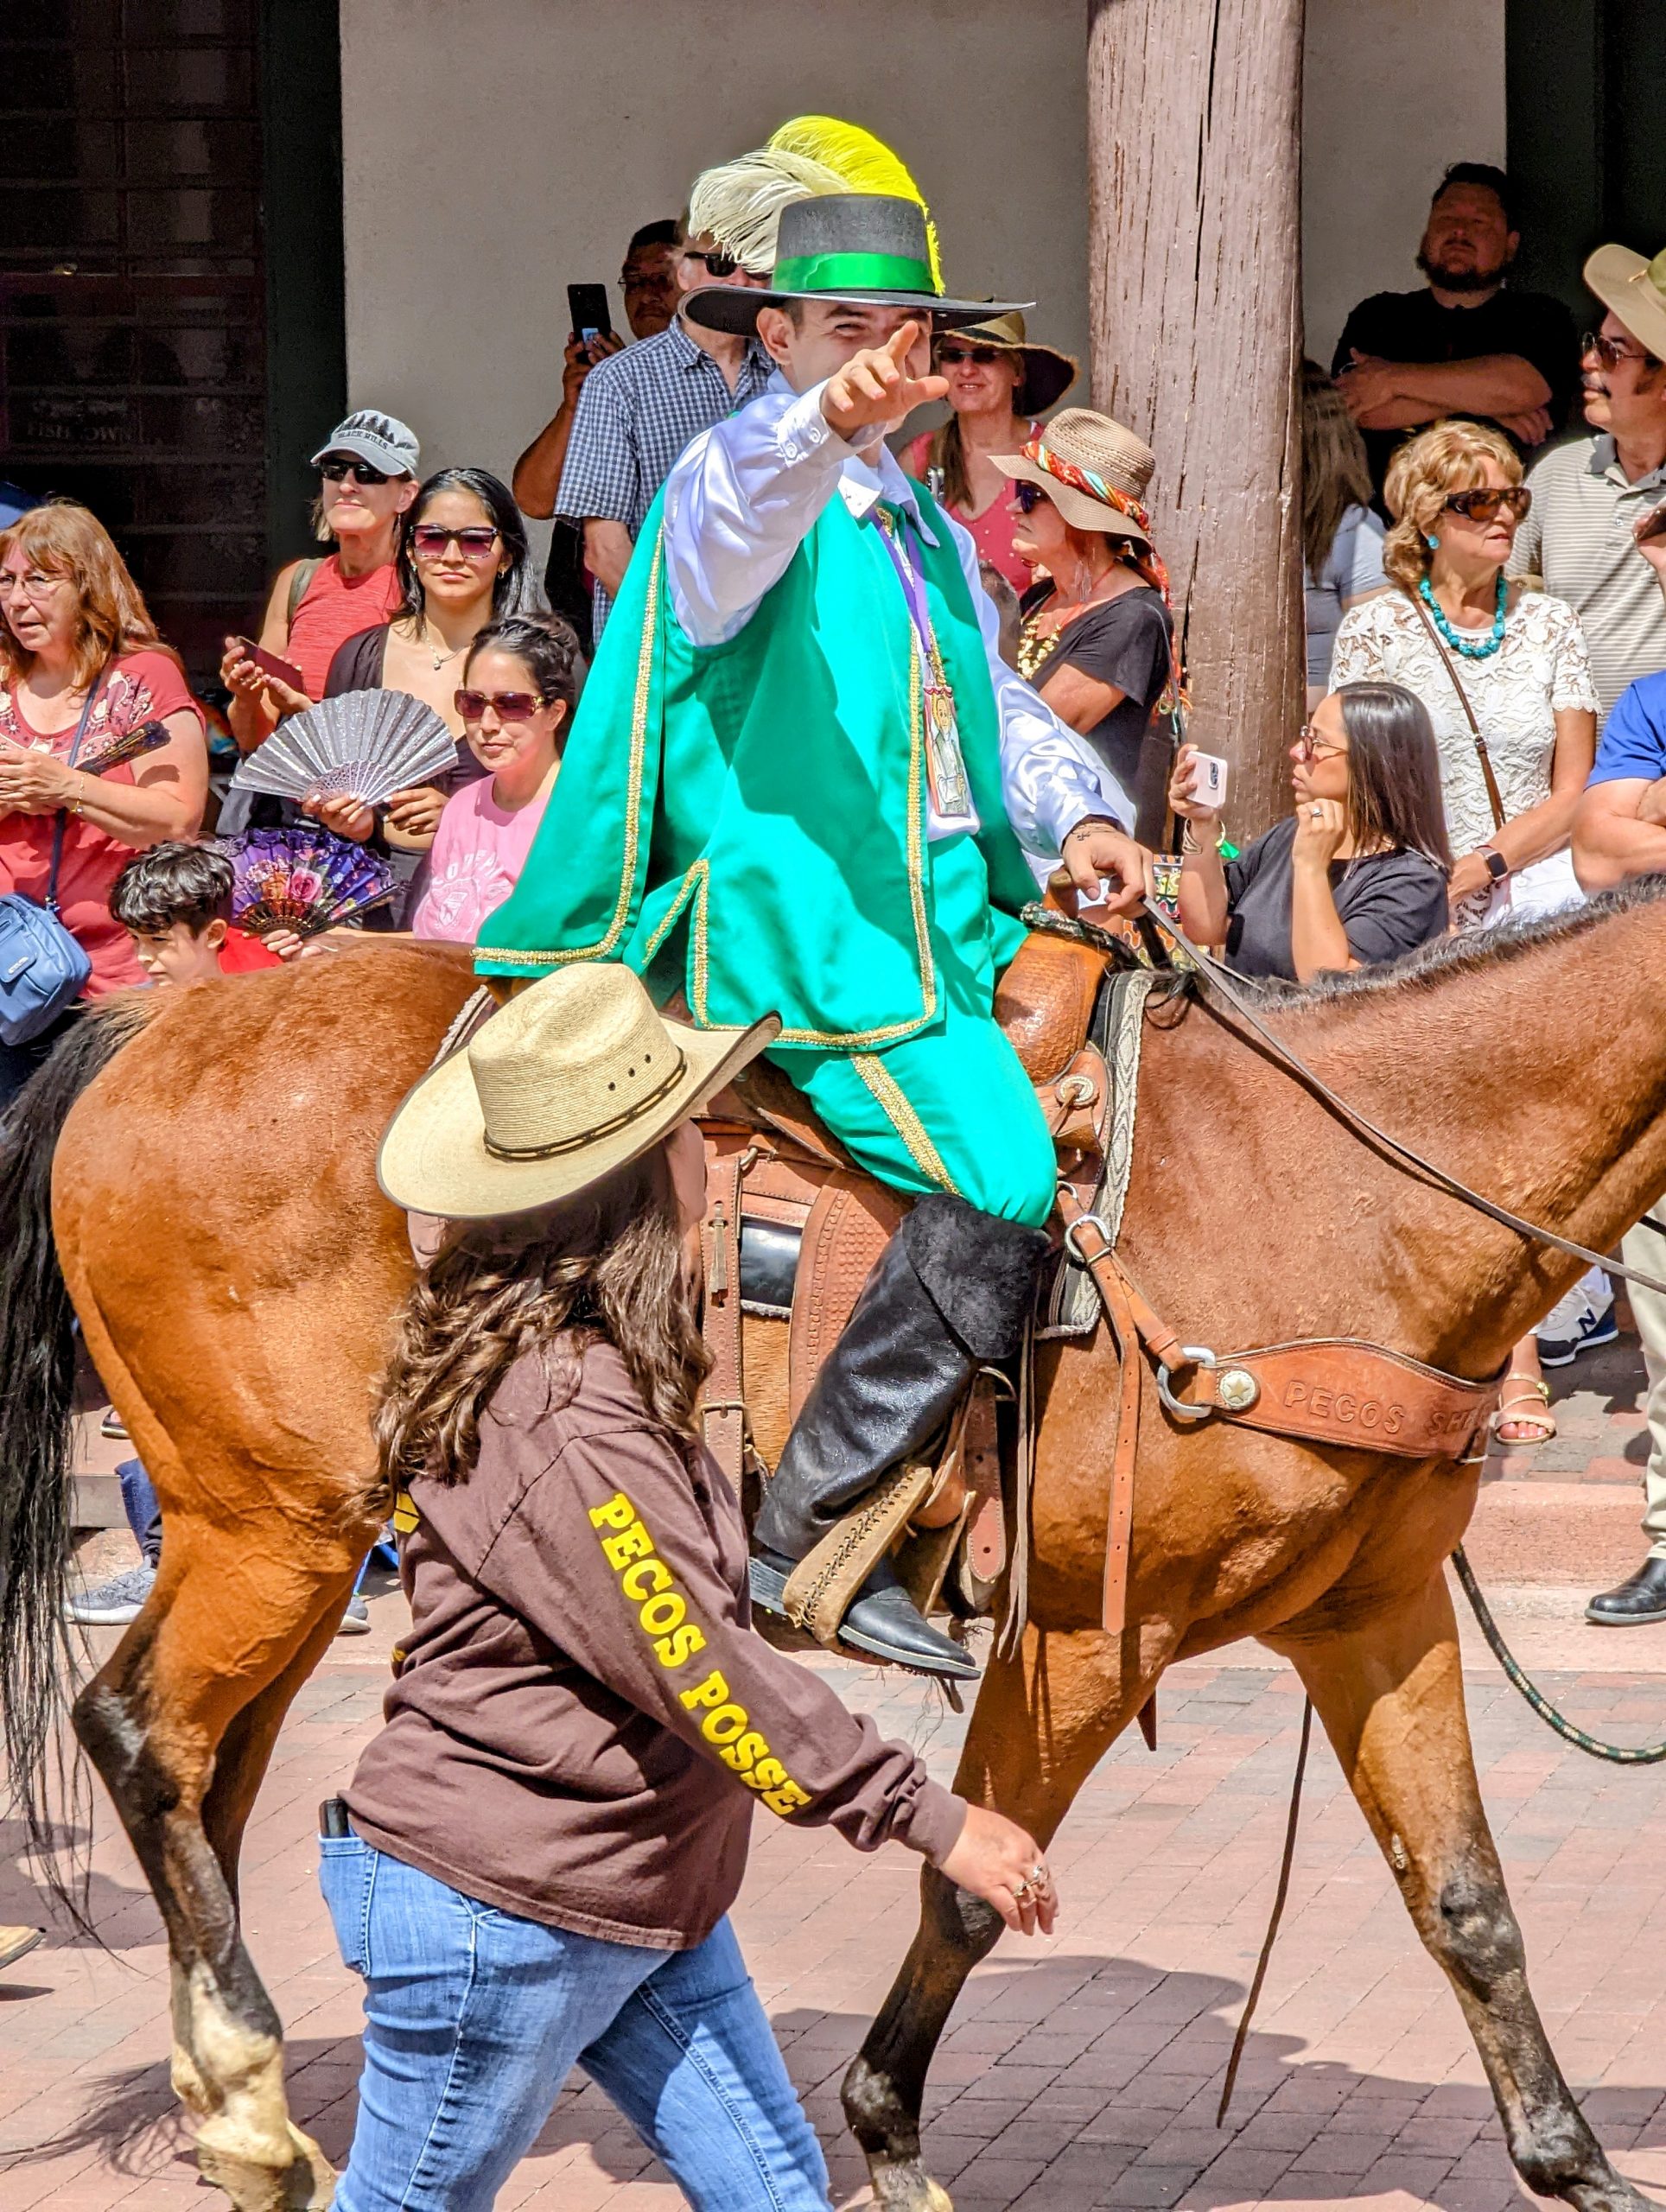 Man dressed as conquistador on a horse